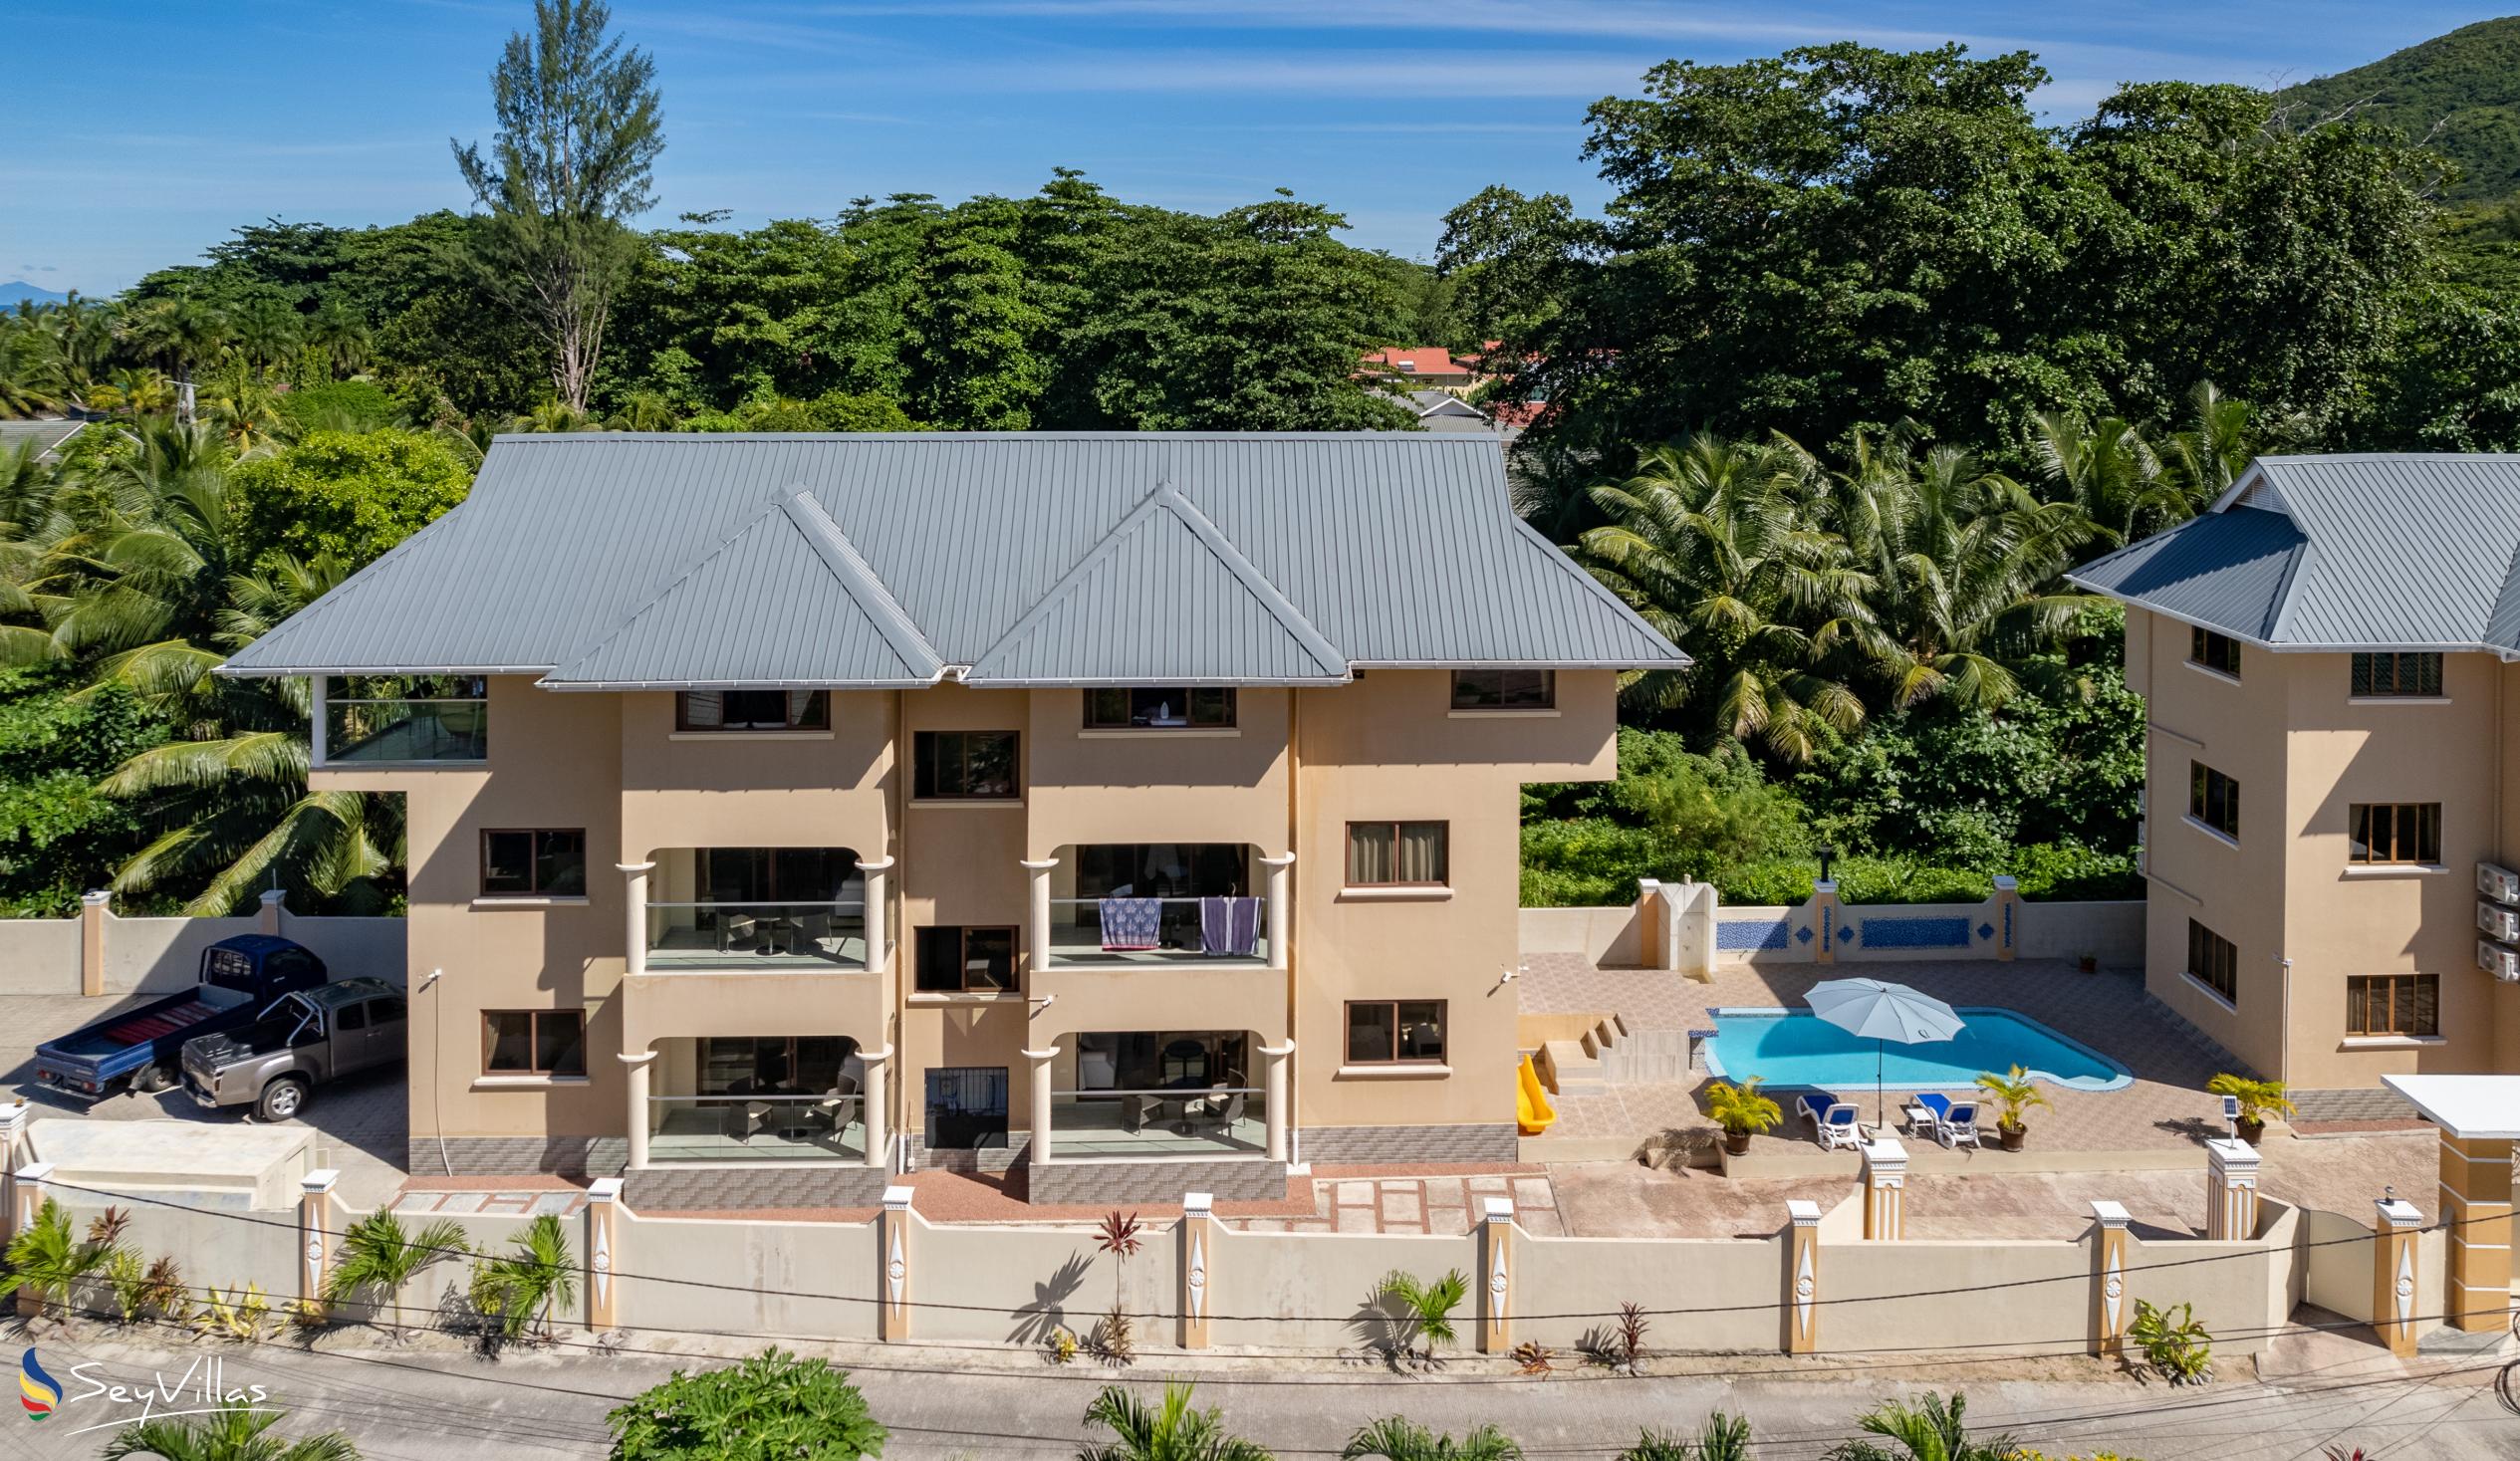 Foto 11: Stone Self Catering Apartments - Aussenbereich - Praslin (Seychellen)